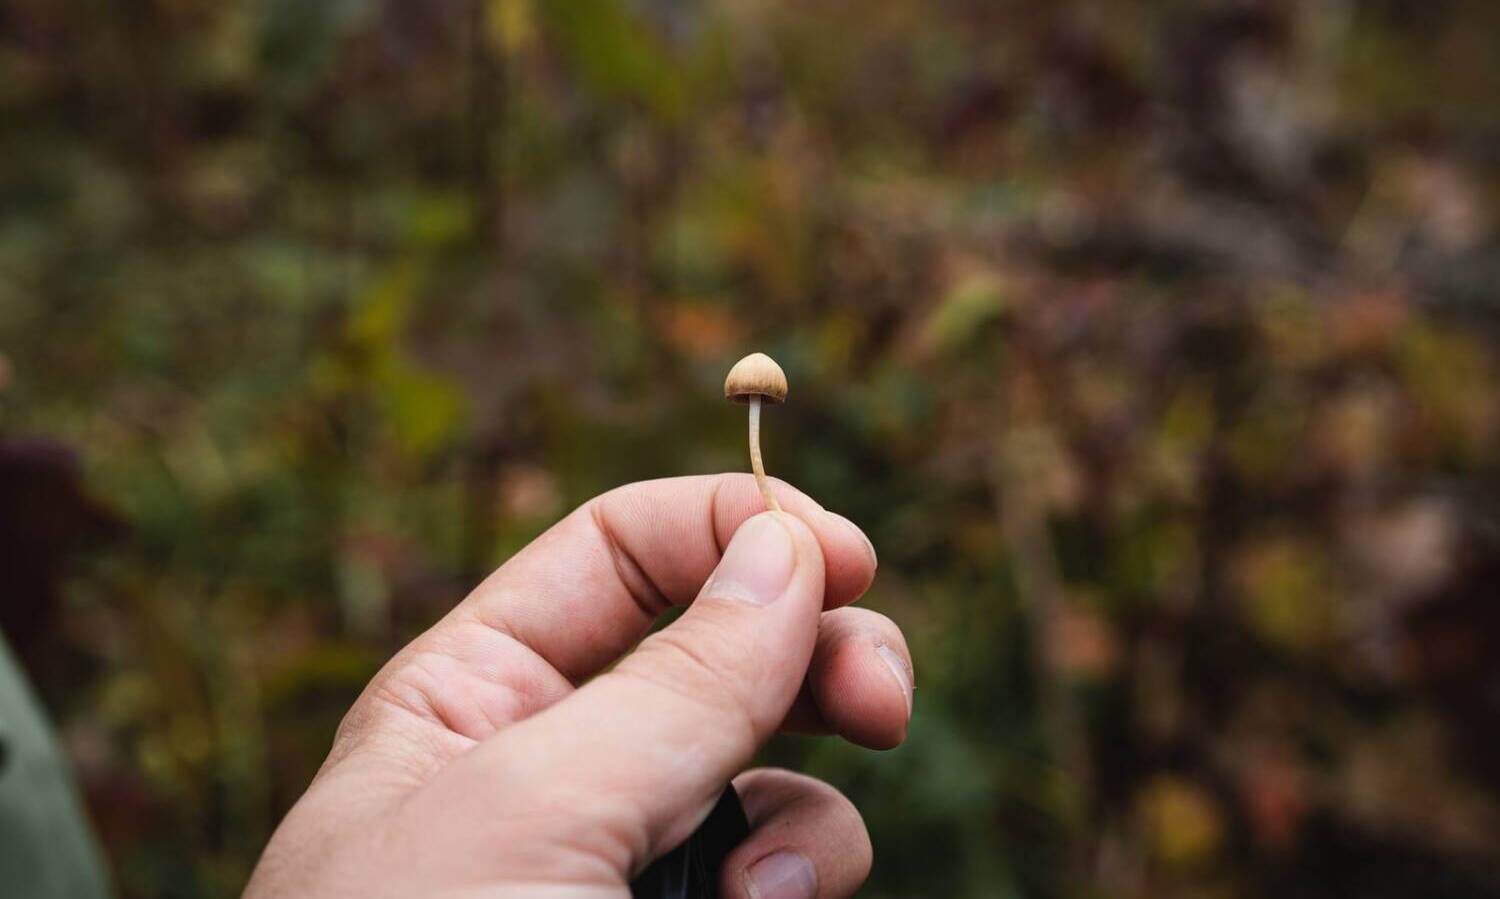 magic mushrooms psilocybin